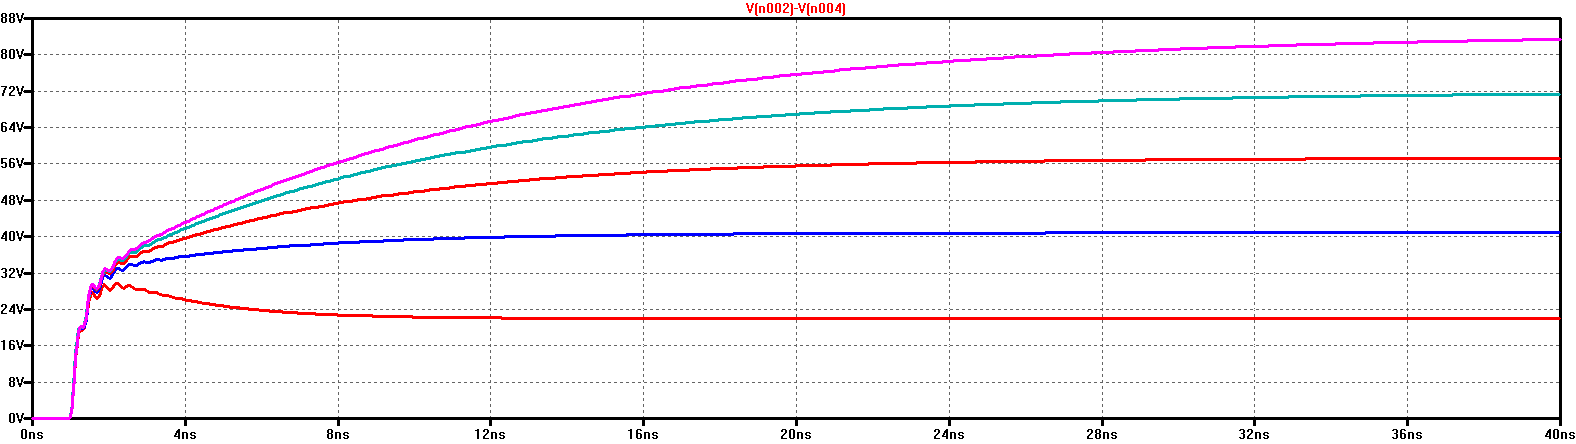 Рисунок 6. Напряжение затвор – исток во время переходного процесса в транзисторе IRF-7201 при напряжении разряда VESD = 300 В и емкостях печатной платы Cpsb = 100 пФ (кривая 1), 200 пФ (кривая 2), 300 пФ (кривая 3), 400 пФ (кривая 4), 500 пФ (кривая 5)